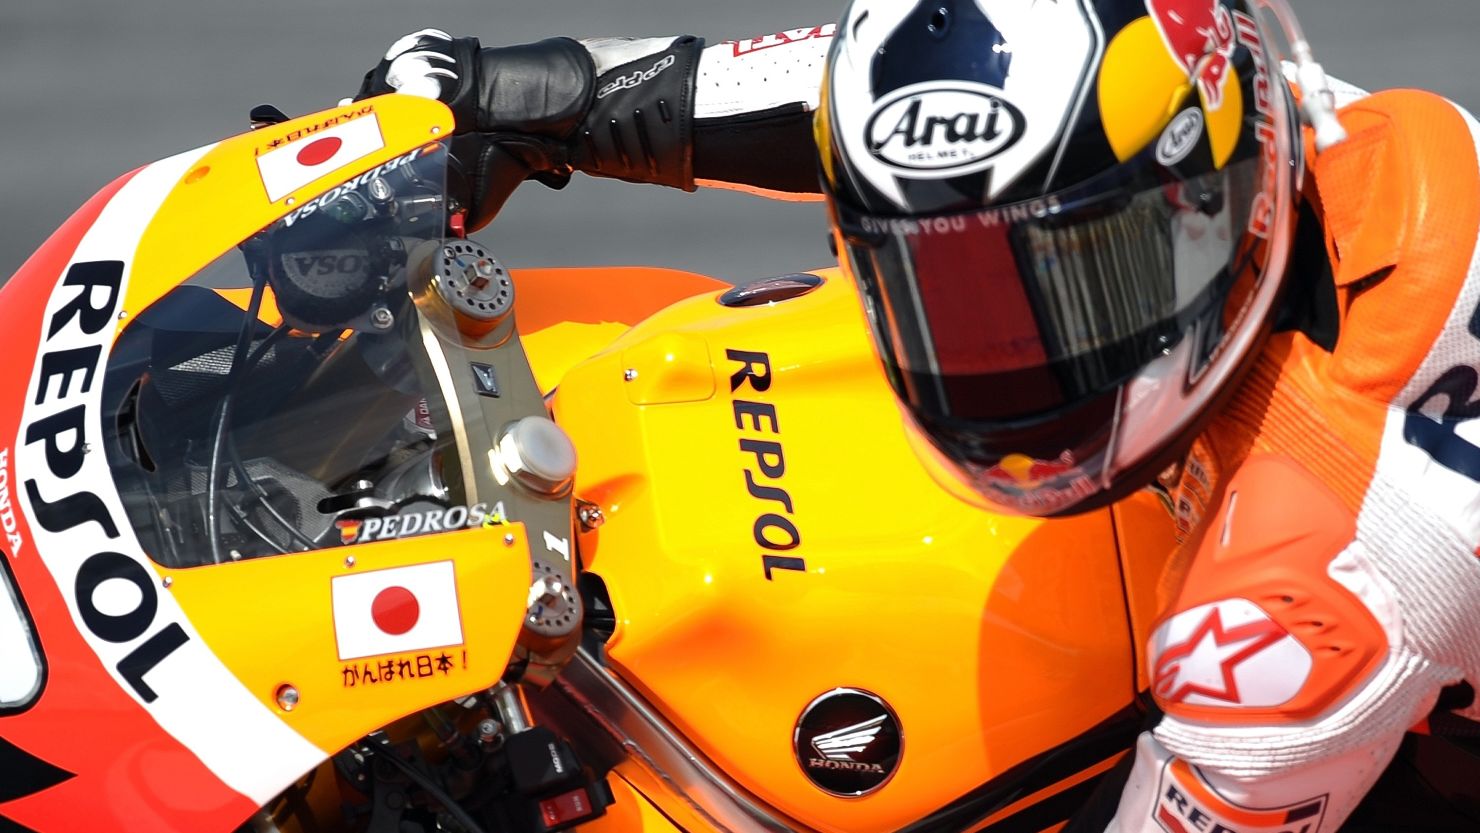 Dani Pedrosa steers his Repsol Honda machine to pole position in Malaysia